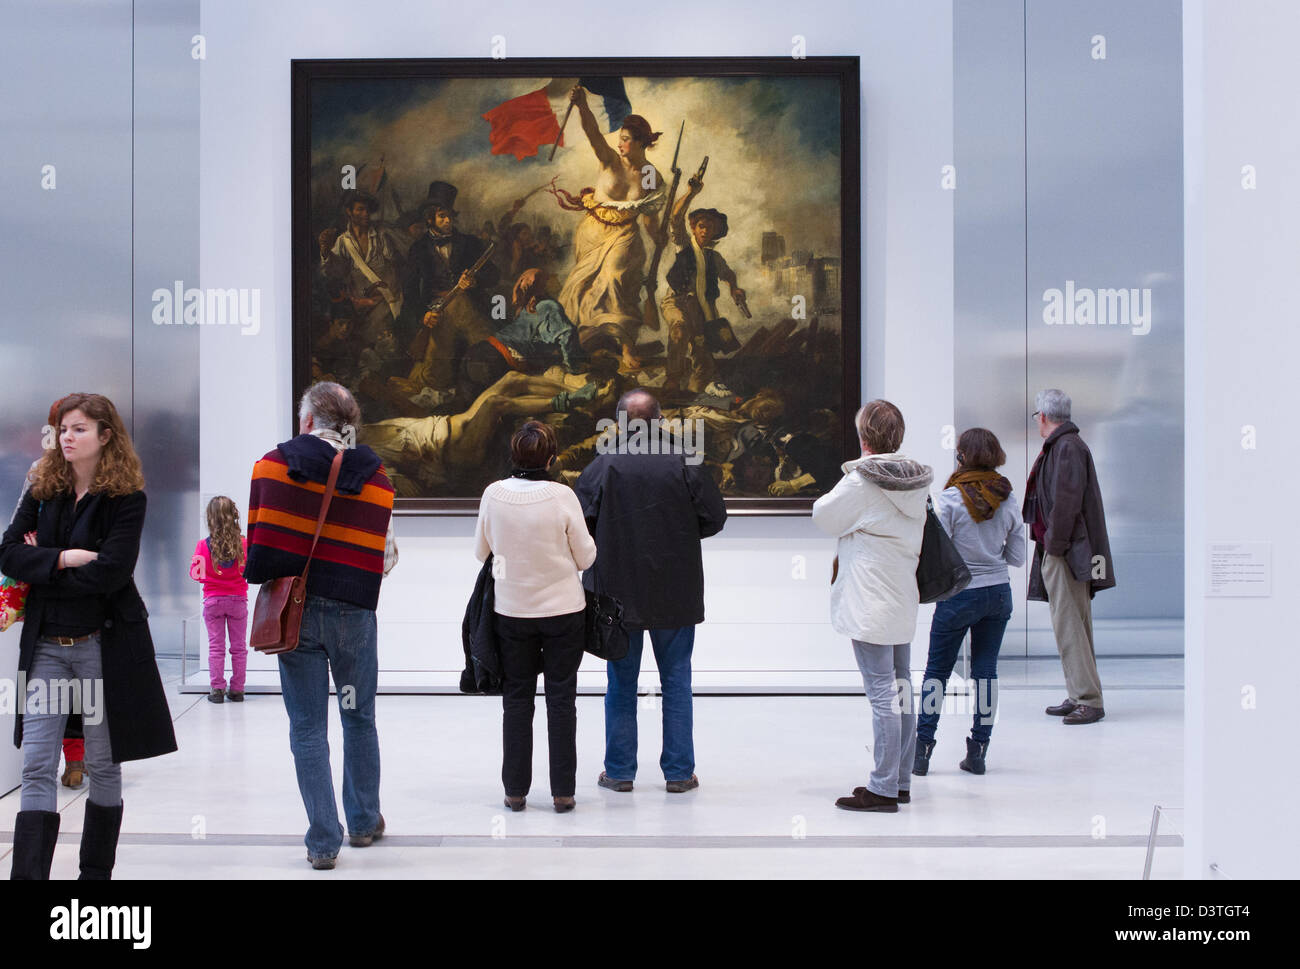 La liberté à la tête du peuple par Eugène Delacroix, représentant la Révolution de juillet 1830, à la galerie Louvre Lens, dans le nord de la France Banque D'Images